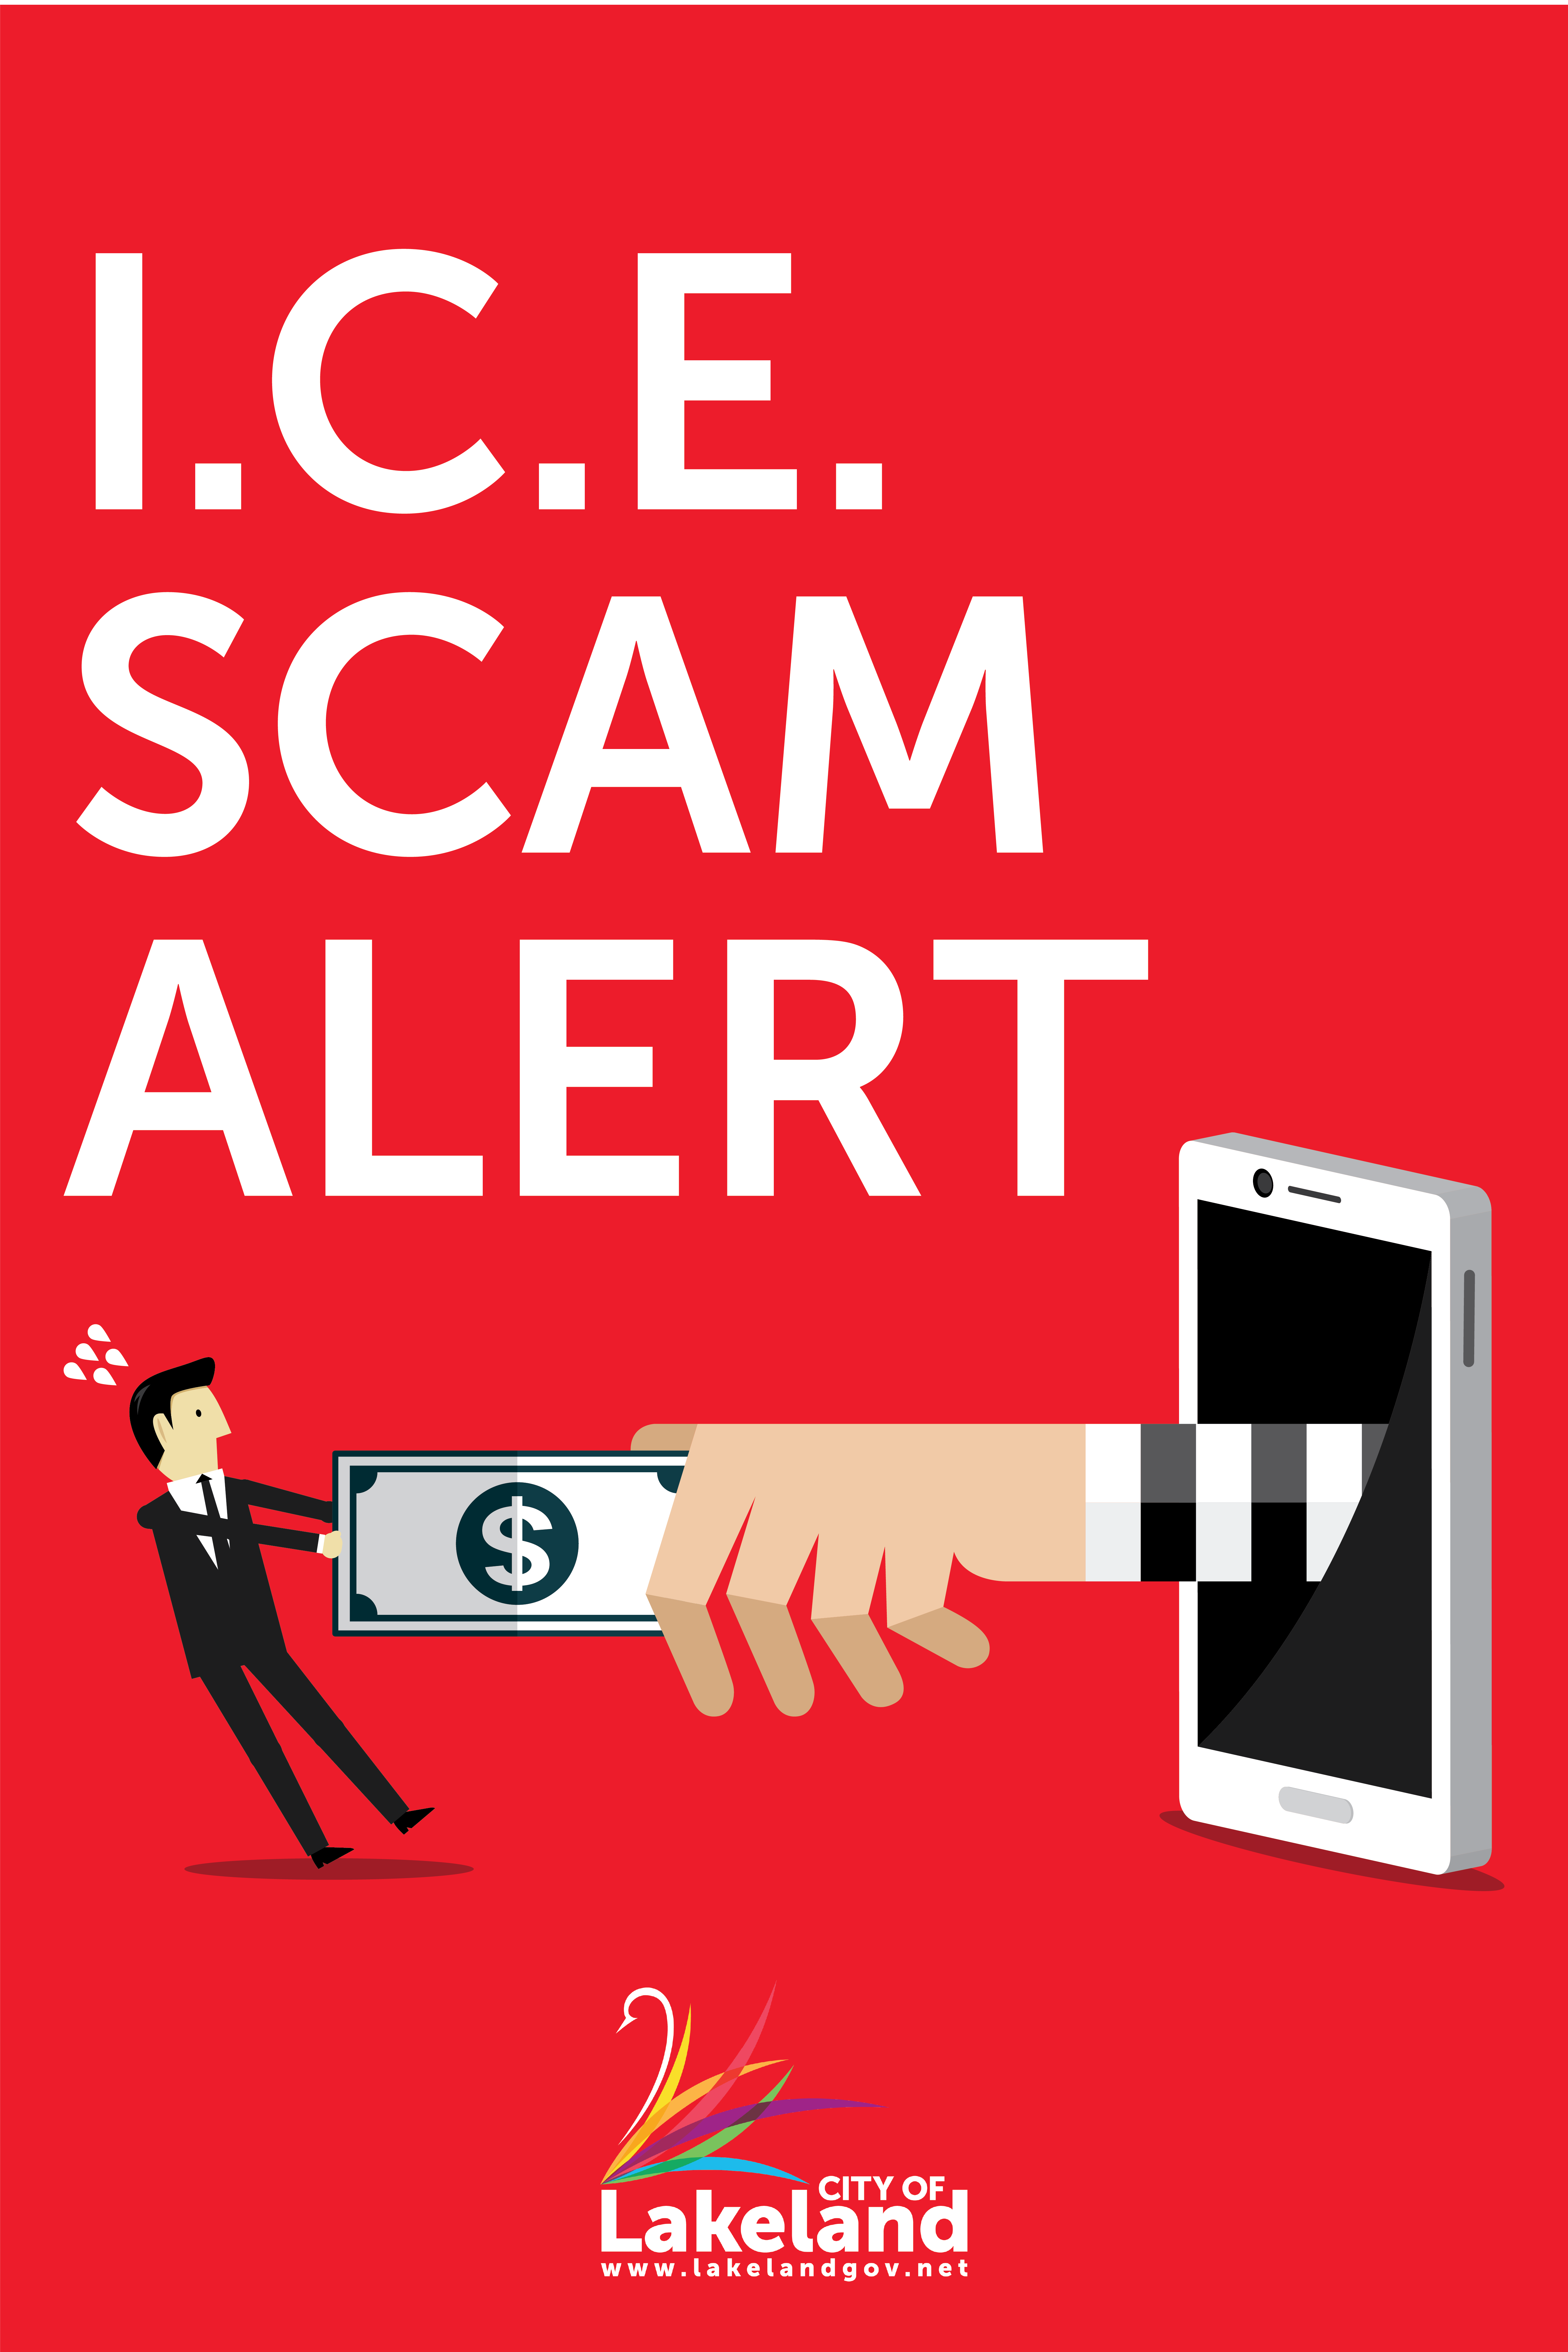 ICE Scam Alert - Alerta de Estafas - Lakeland, FL